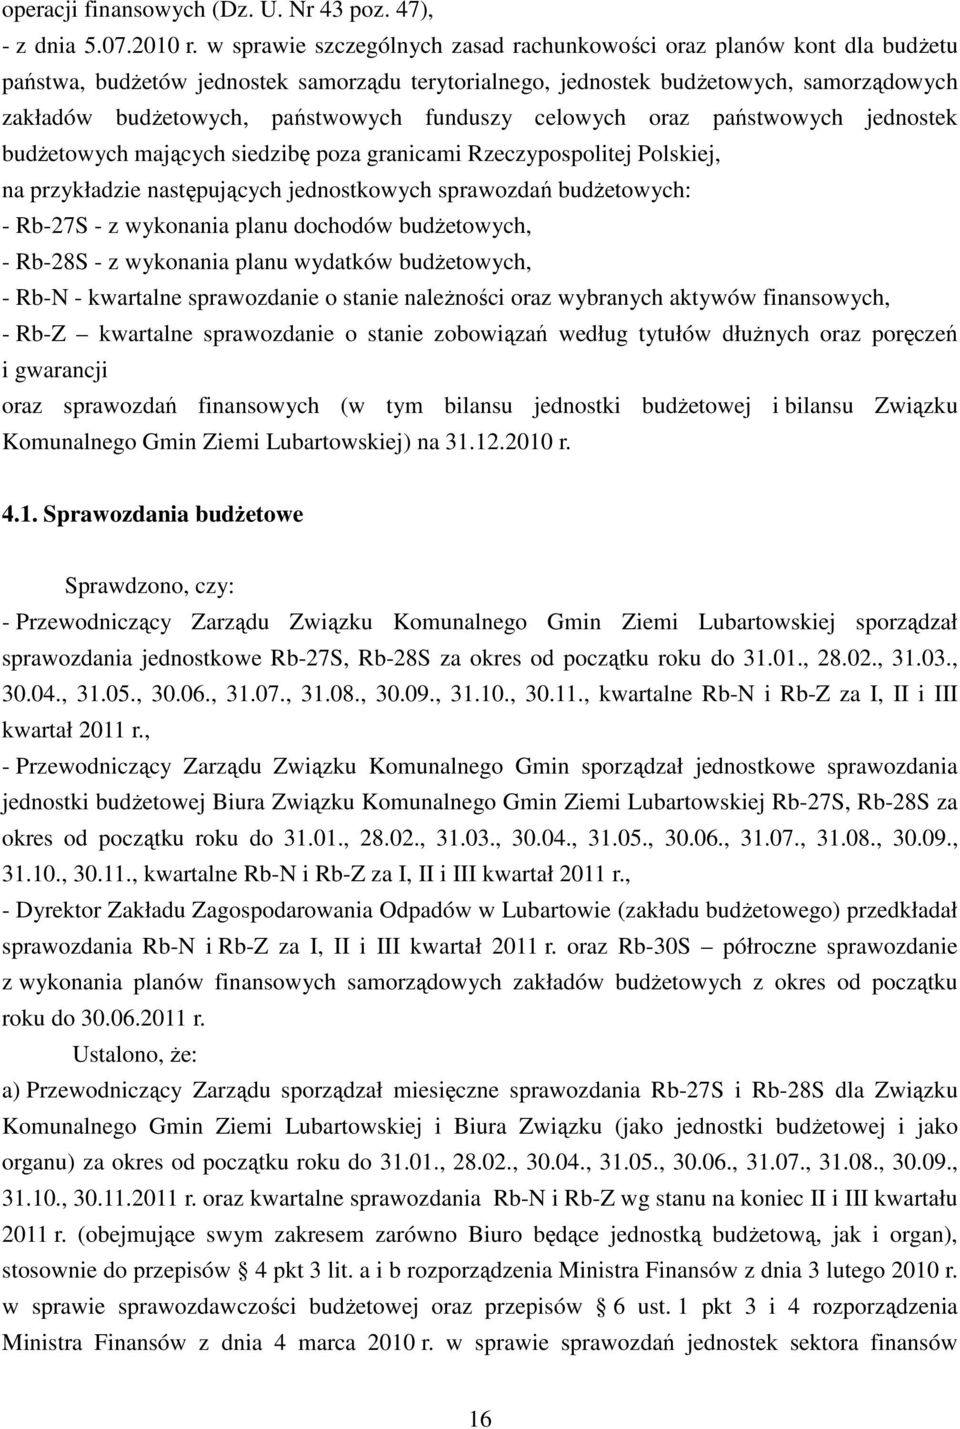 funduszy celowych oraz państwowych jednostek budżetowych mających siedzibę poza granicami Rzeczypospolitej Polskiej, na przykładzie następujących jednostkowych sprawozdań budżetowych: - Rb-27S - z